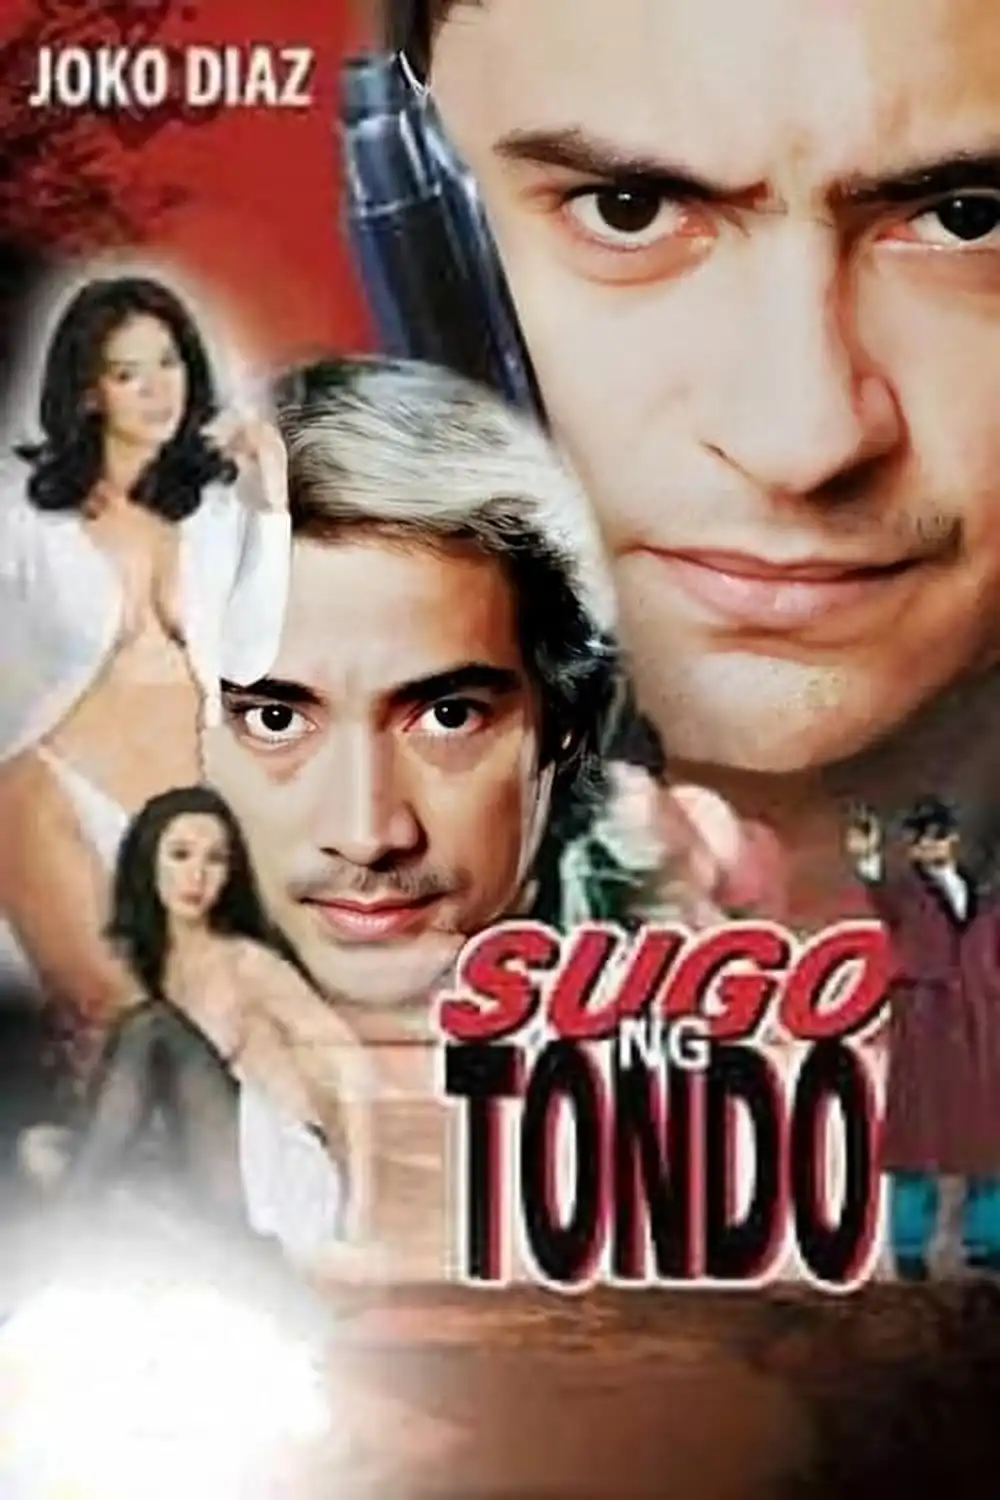 Watch and Download Sugo ng Tondo 2